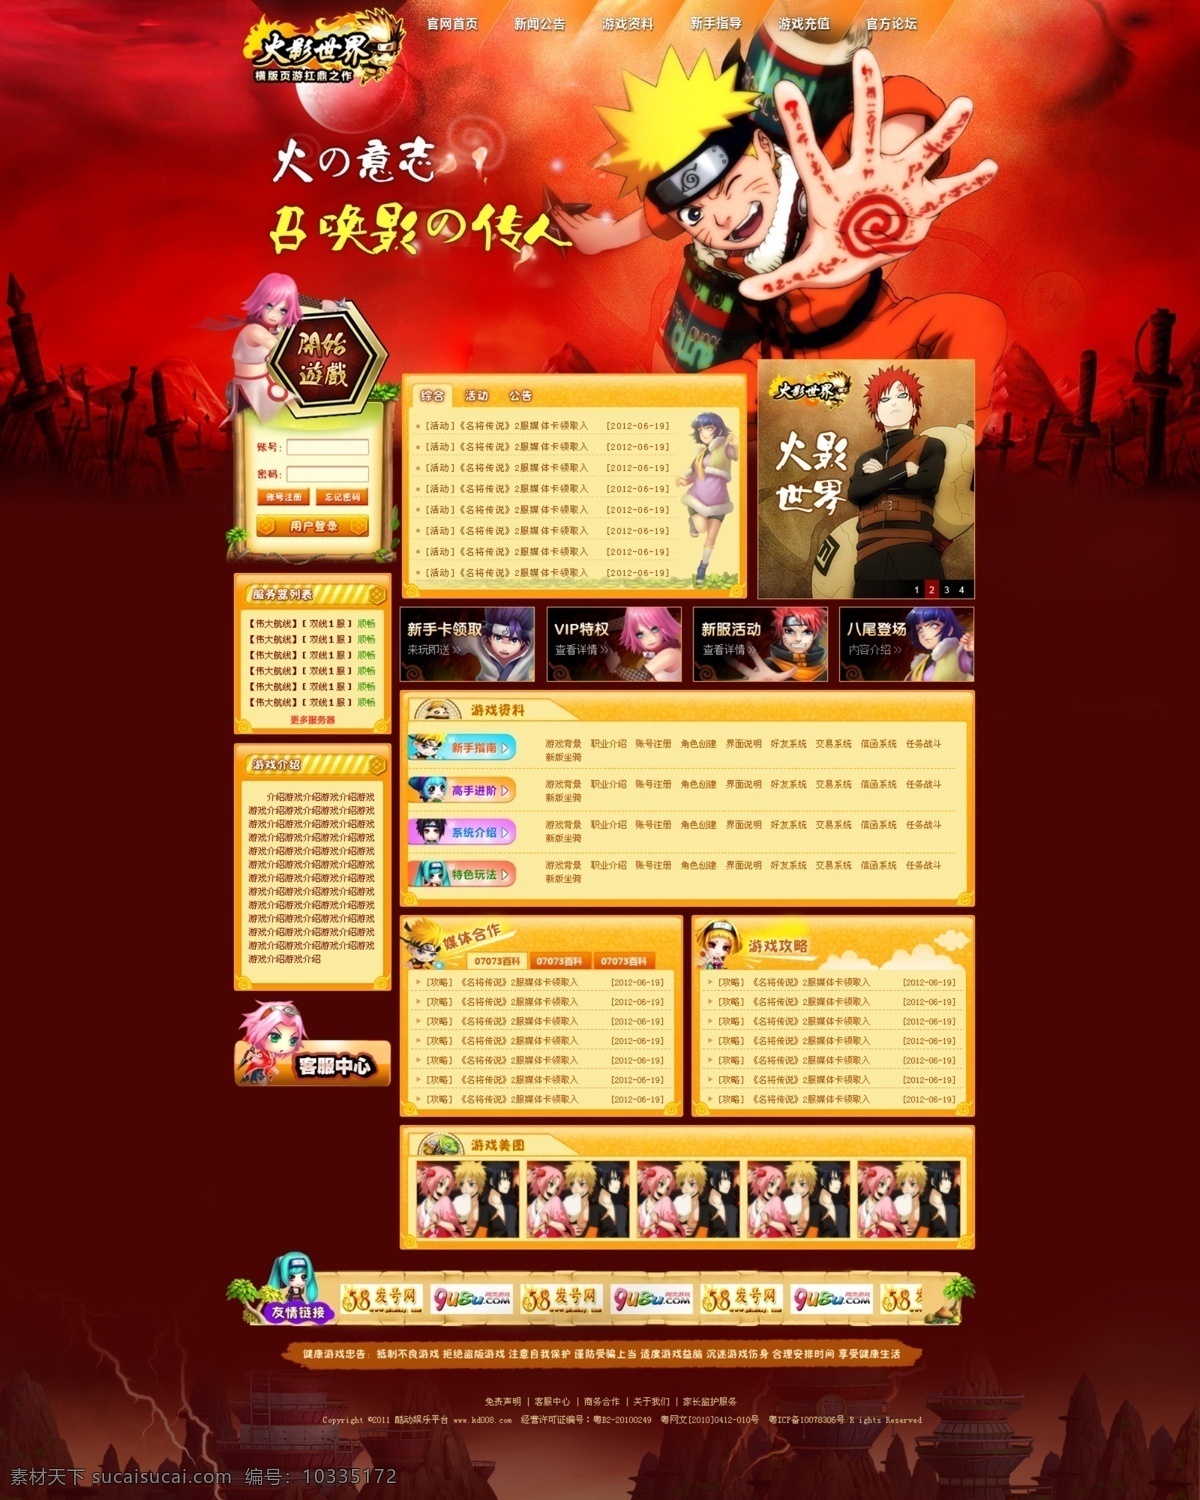 游戏网页素材 游戏页面 游戏 国外 网页设计 游戏专题 游戏素材 游戏海报 游戏人物 游戏元素 移动界面设计 游戏界面 红色